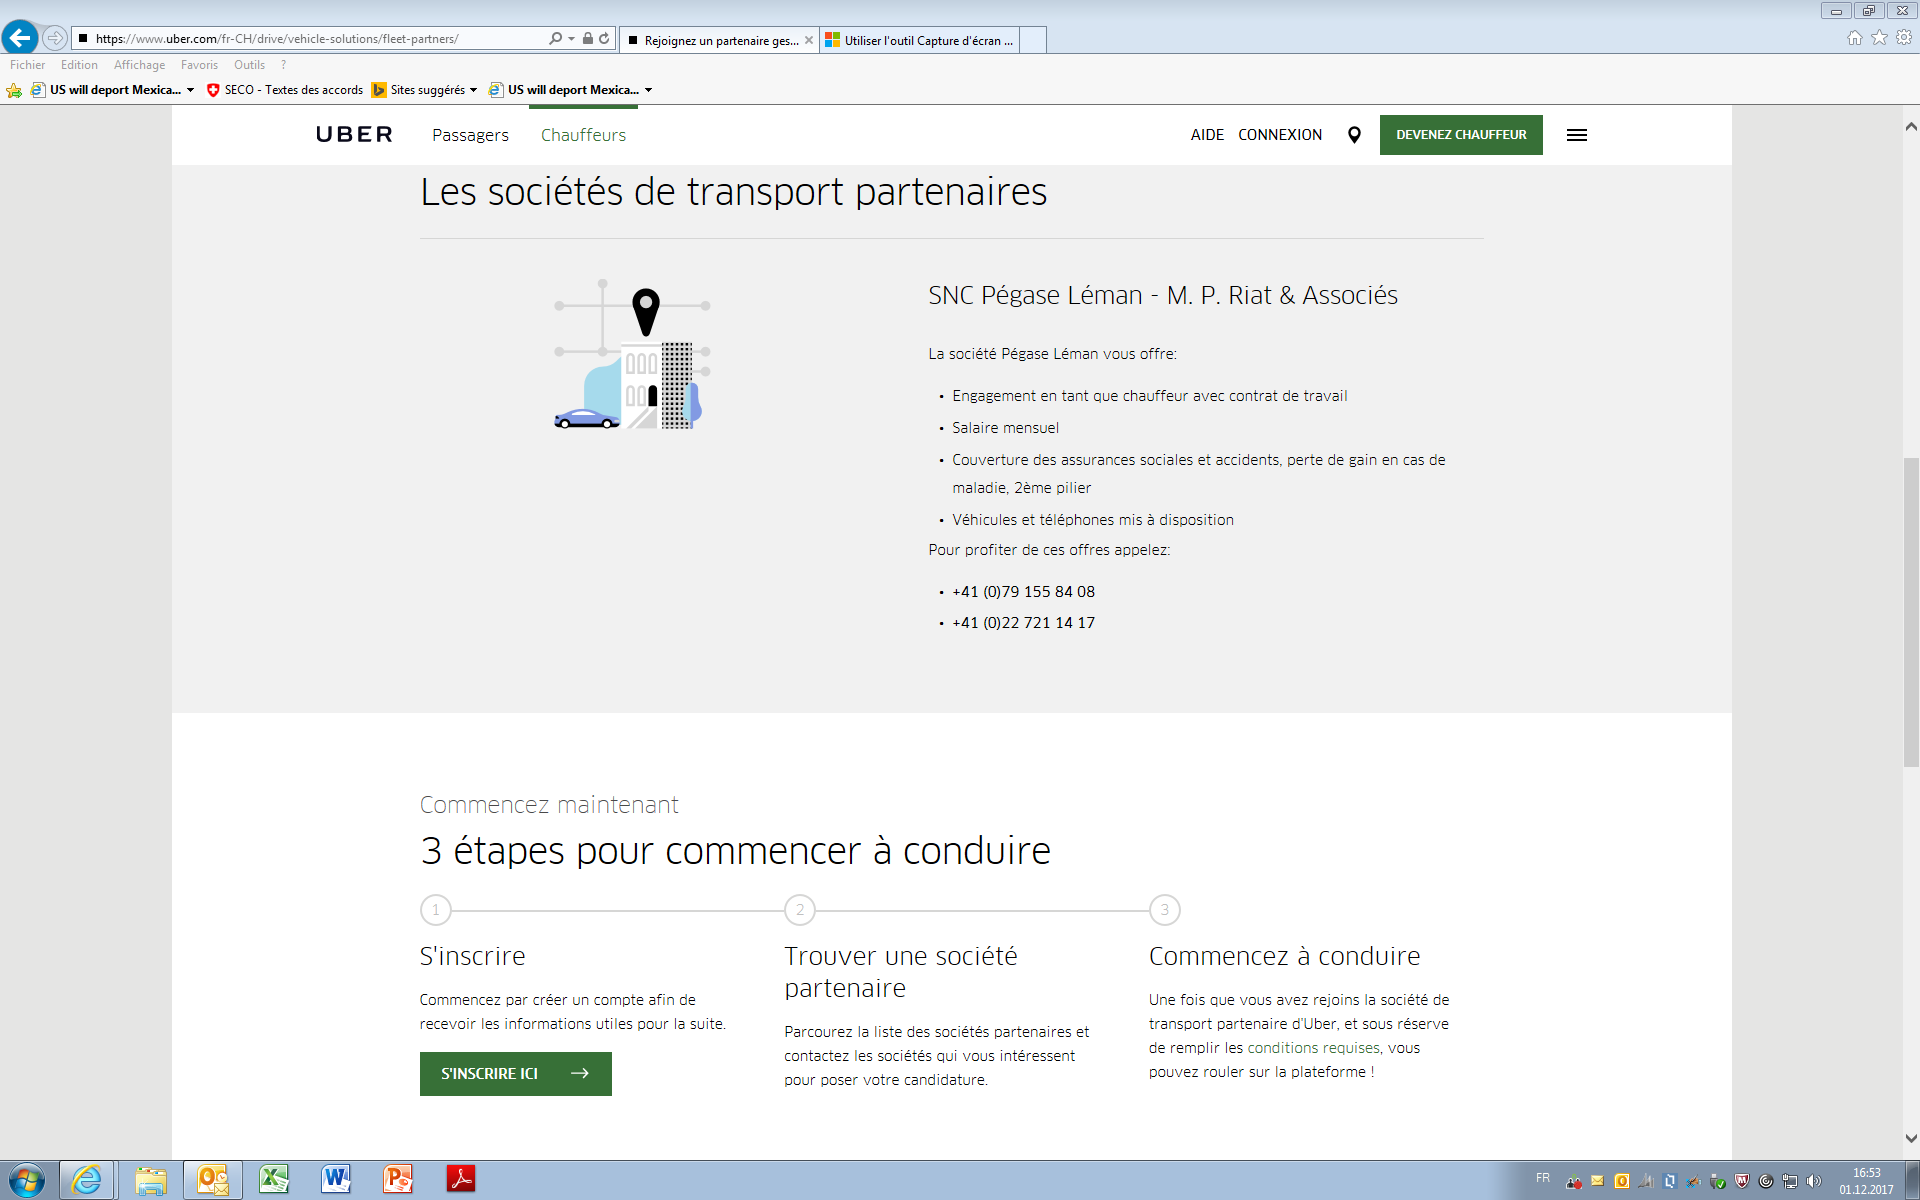 Capture d'écran du site d'Uber qui montre que la société SNC Pégase Léman est partenaire. [RTS]